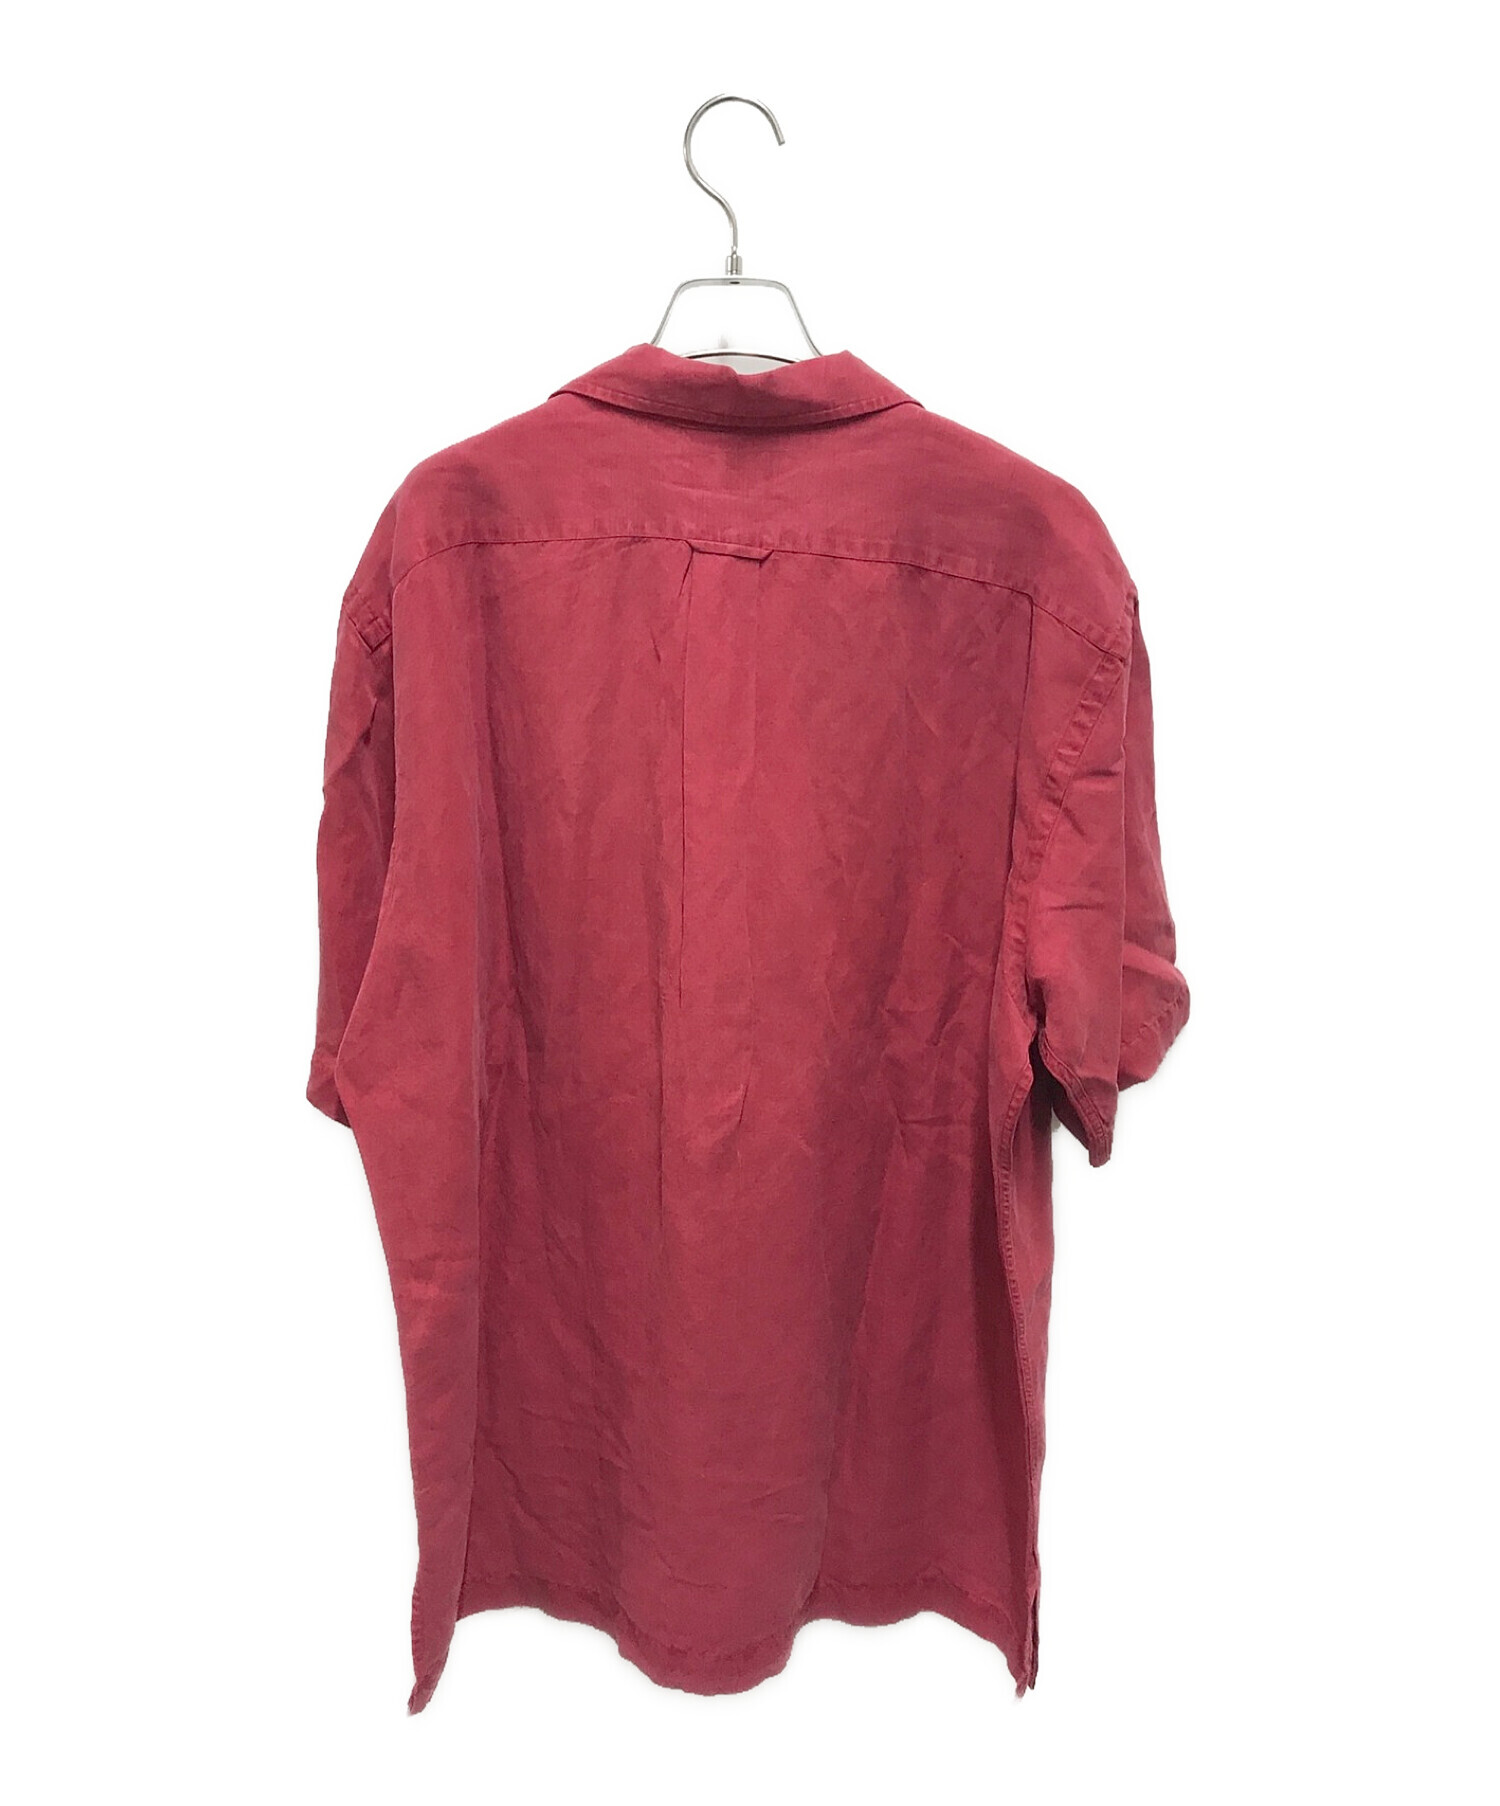 POLO RALPH LAUREN (ポロ・ラルフローレン) リネンシルクオープンカラーシャツ レッド サイズ:L